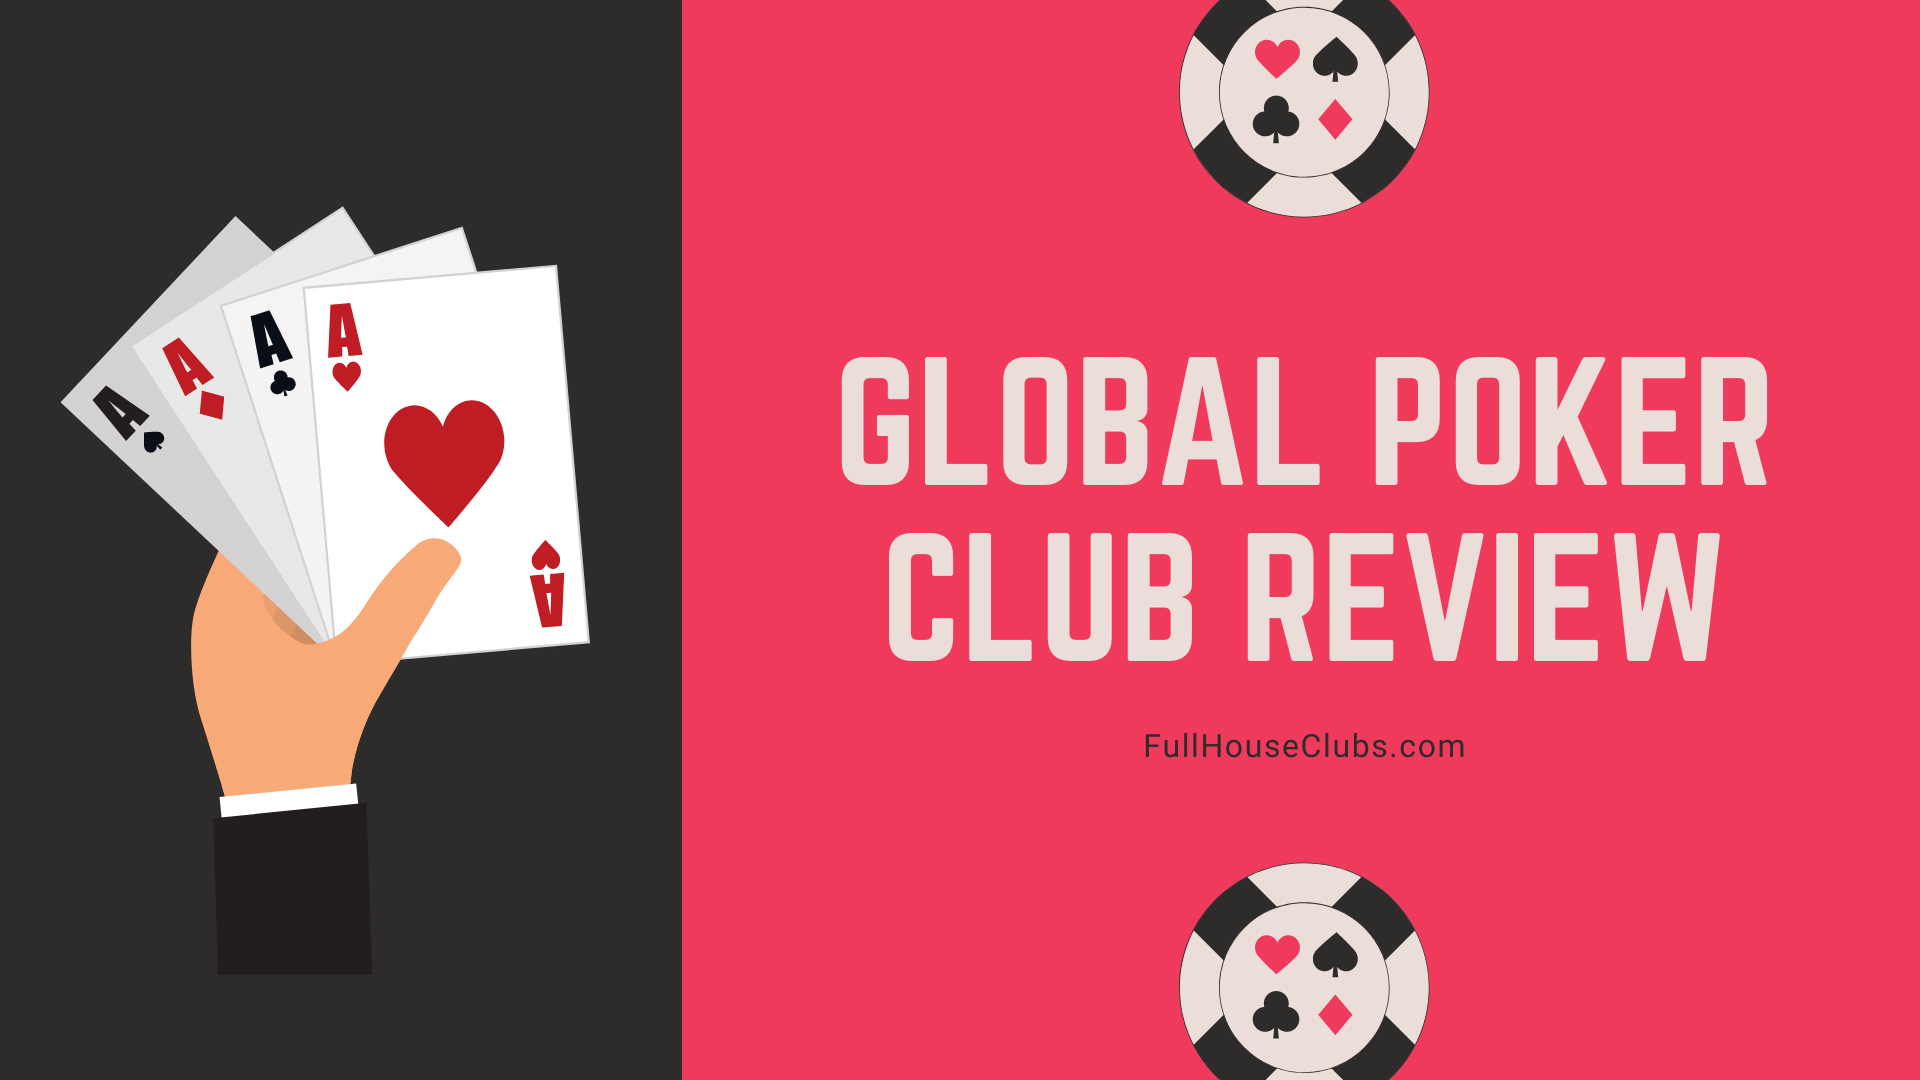 Revue mondiale du poker